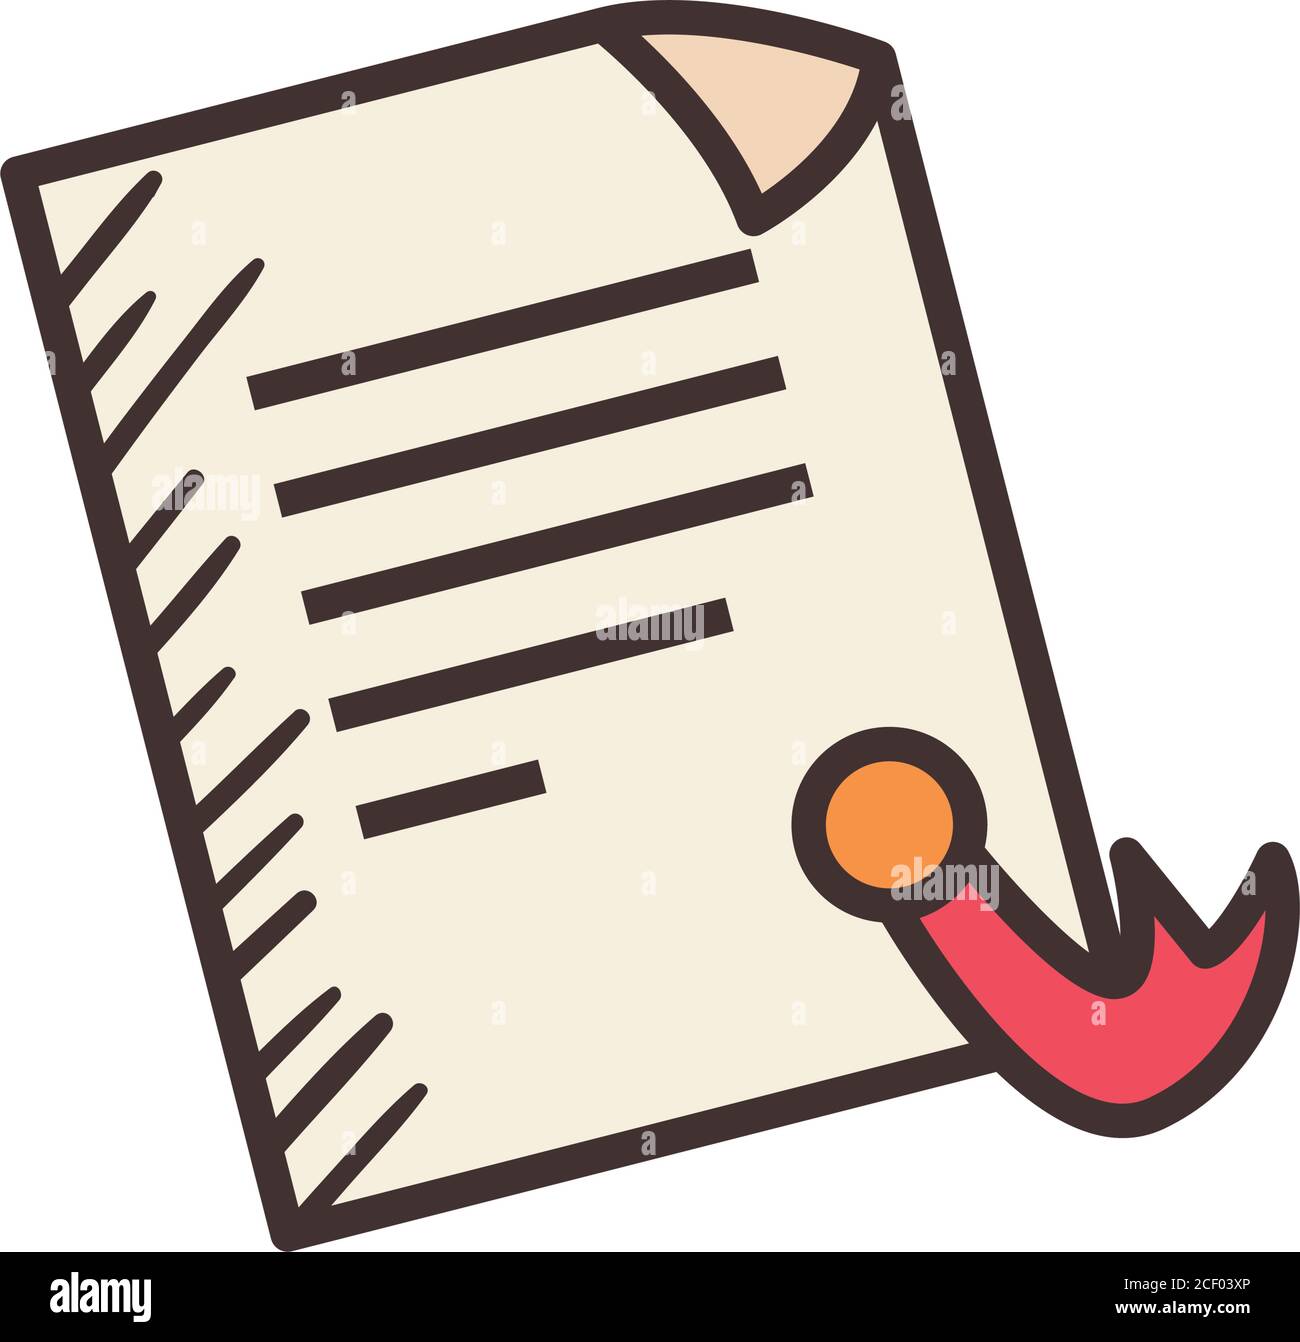 Documento di carta con linea di timbro di sigillo e disegno di icone di  stile di riempimento, archivio di dati e tema di informazioni Illustrazione  vettoriale Immagine e Vettoriale - Alamy